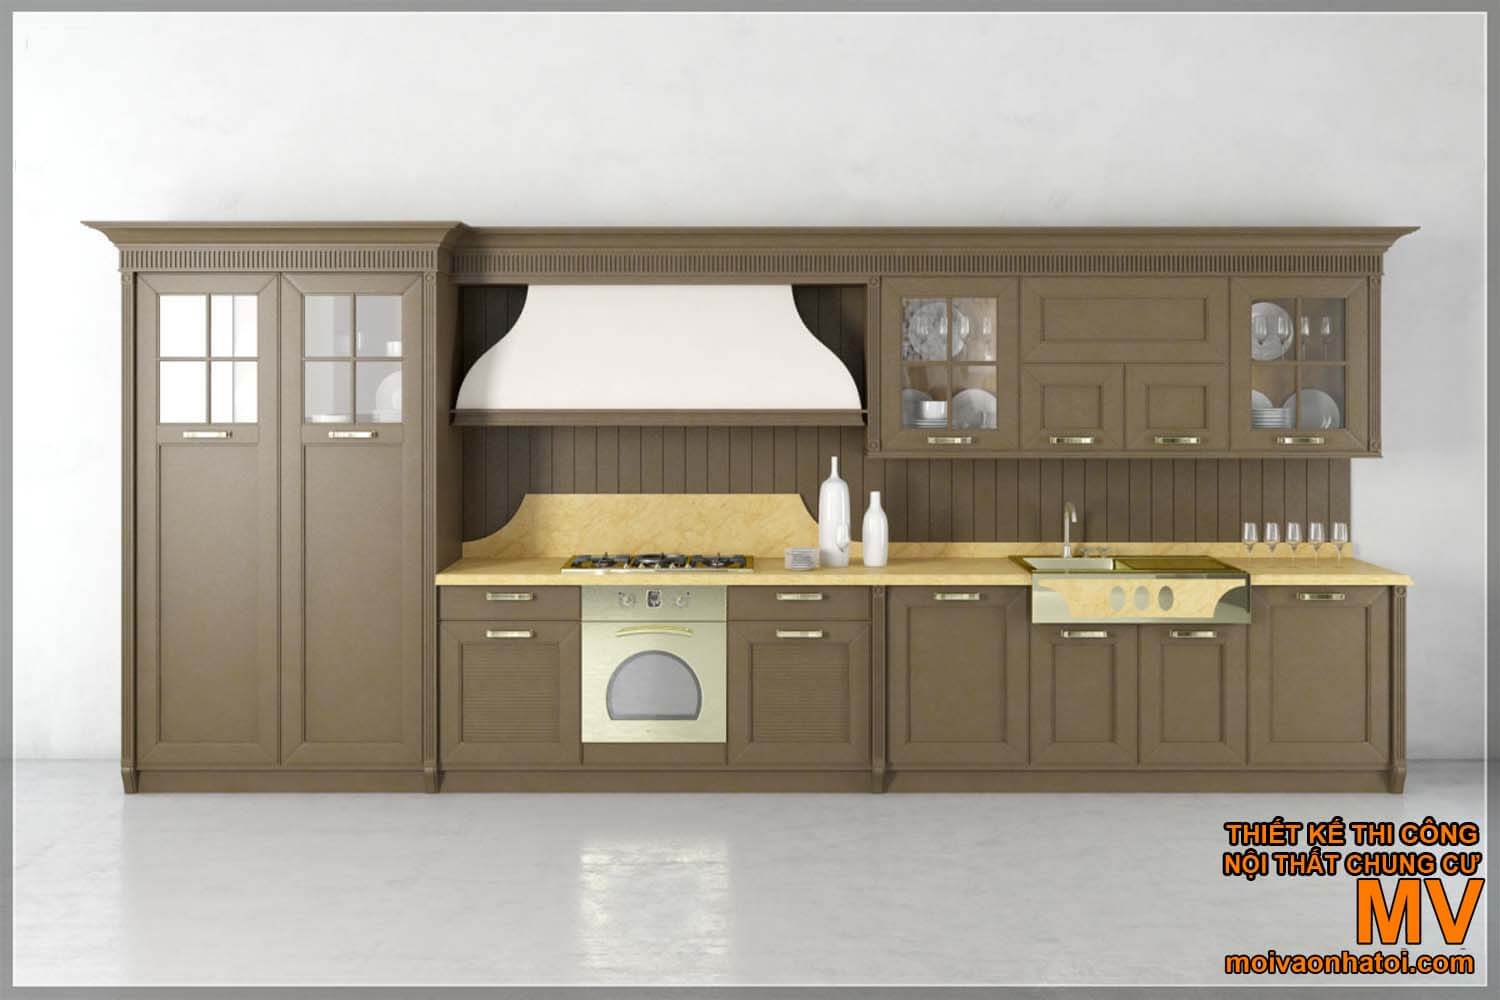 промислові дерев'яні кухонні шафи